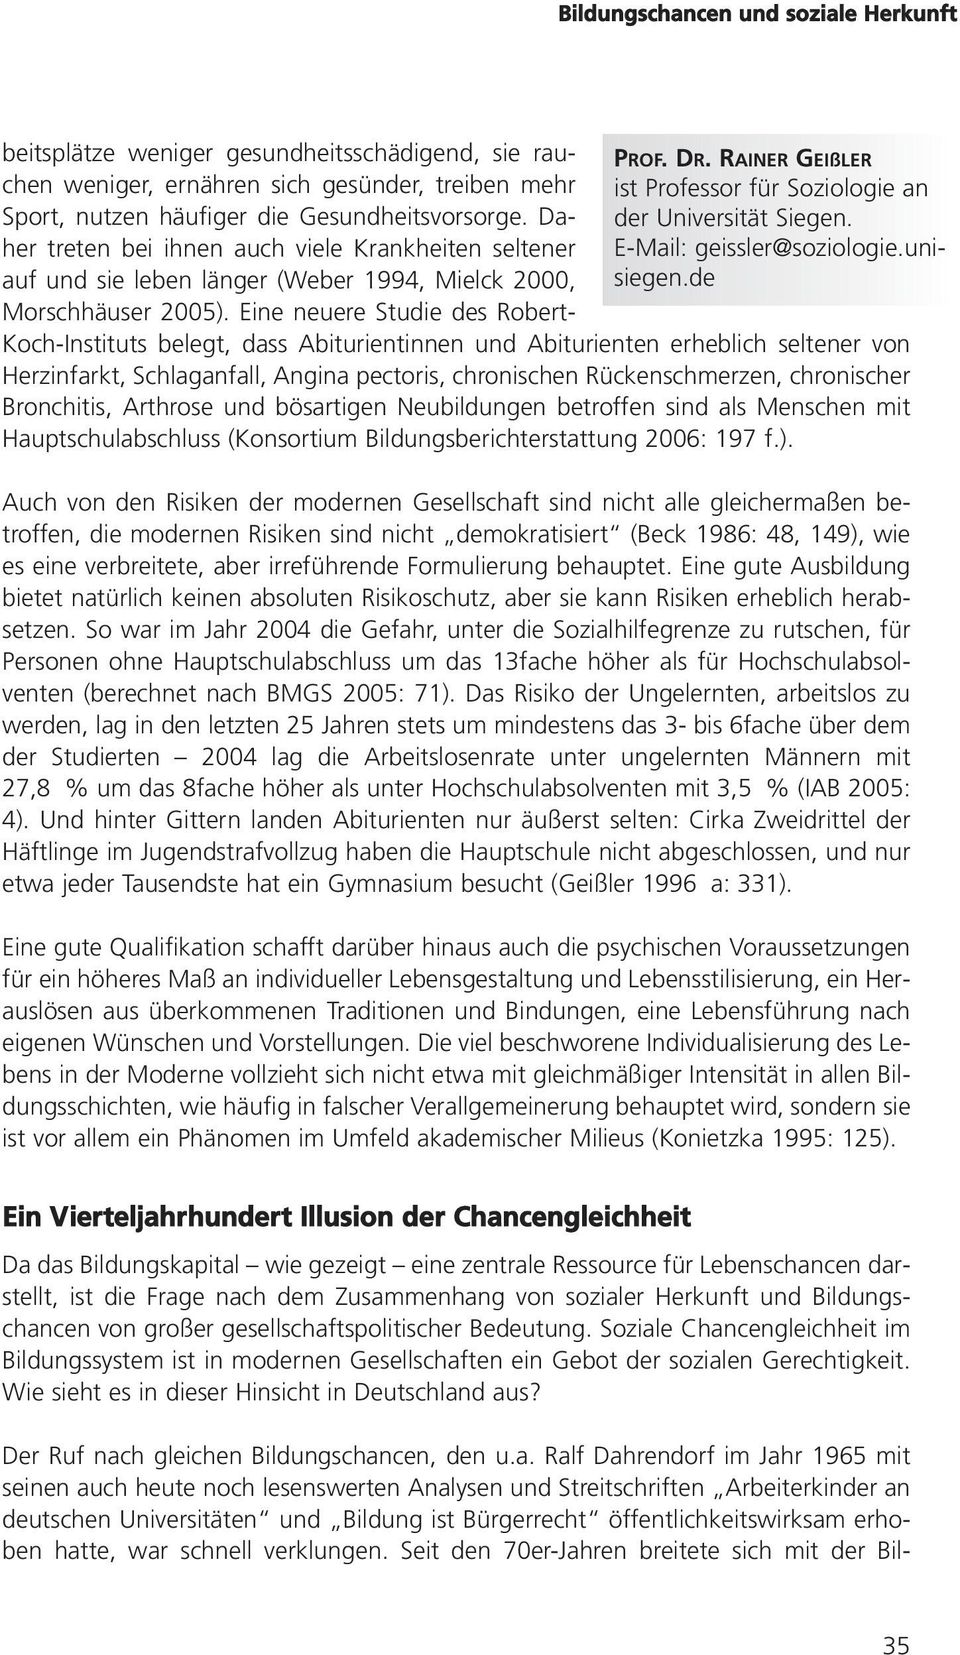 RAINER GEIßLER ist Professor für Soziologie an der Universität Siegen. E-Mail: geissler@soziologie.unisiegen.